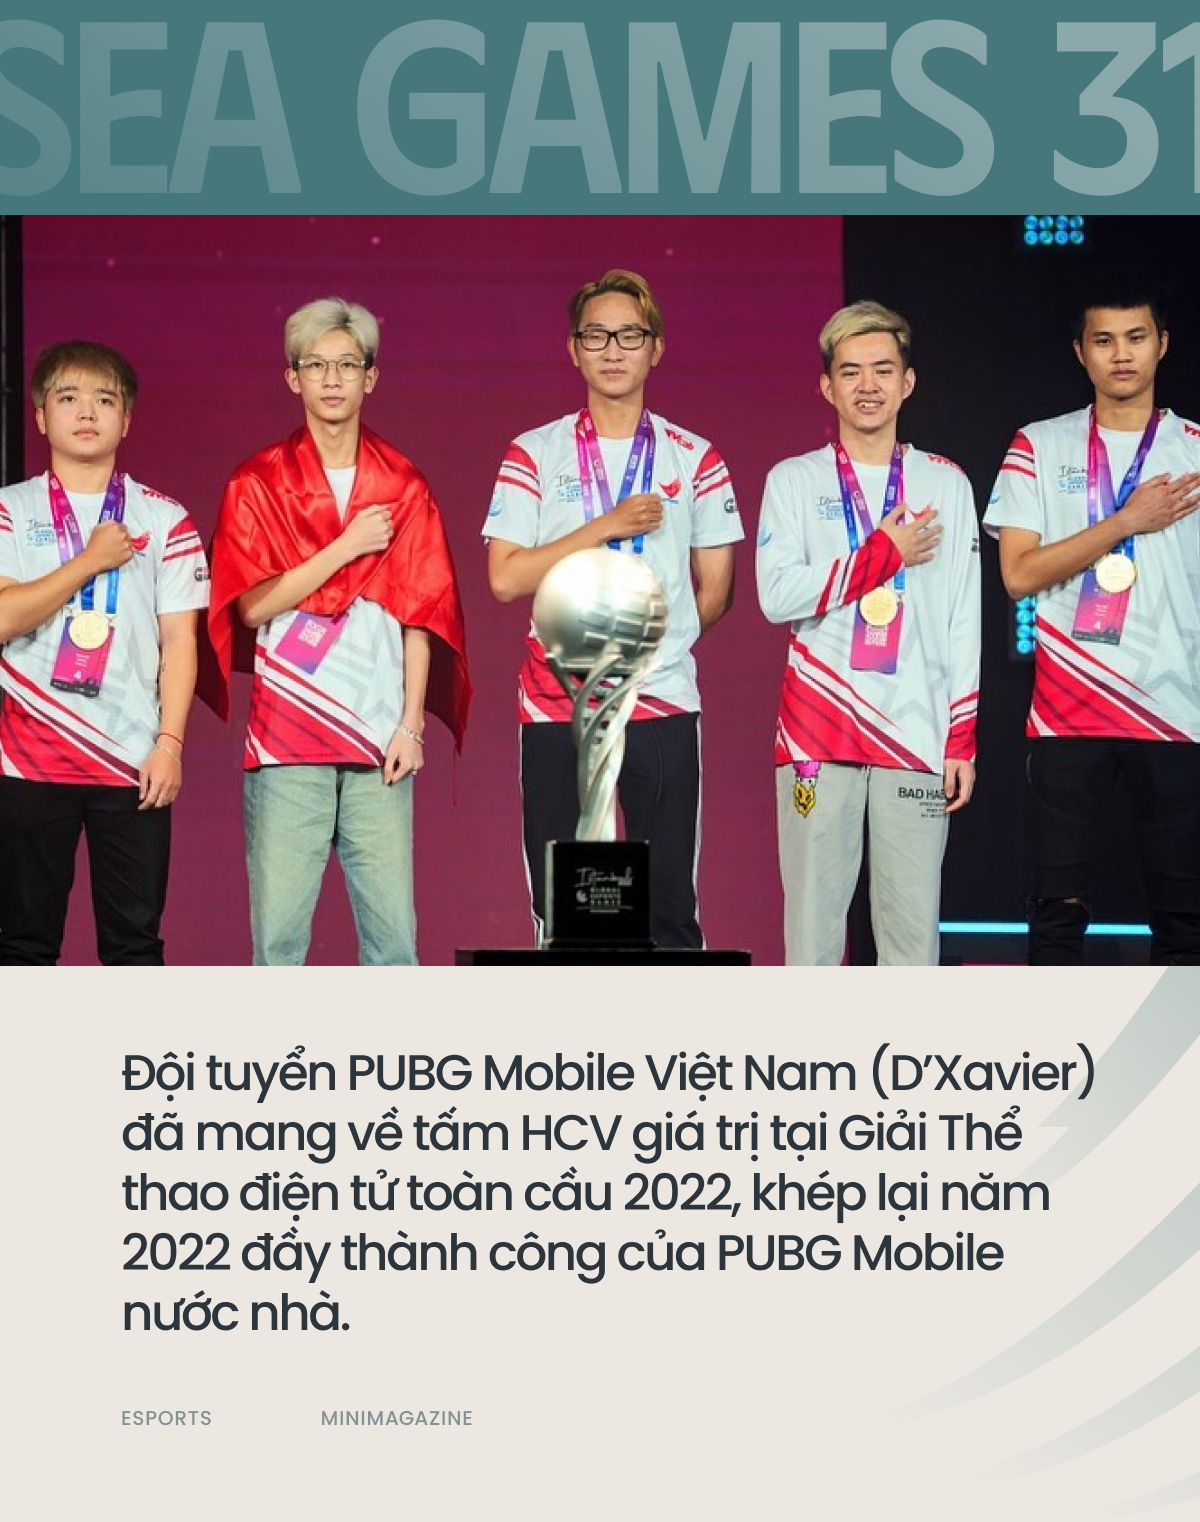 Nhìn lại Esports Việt Nam 2022: Quá nhiều thành tích đáng tự hào! - Ảnh 6.